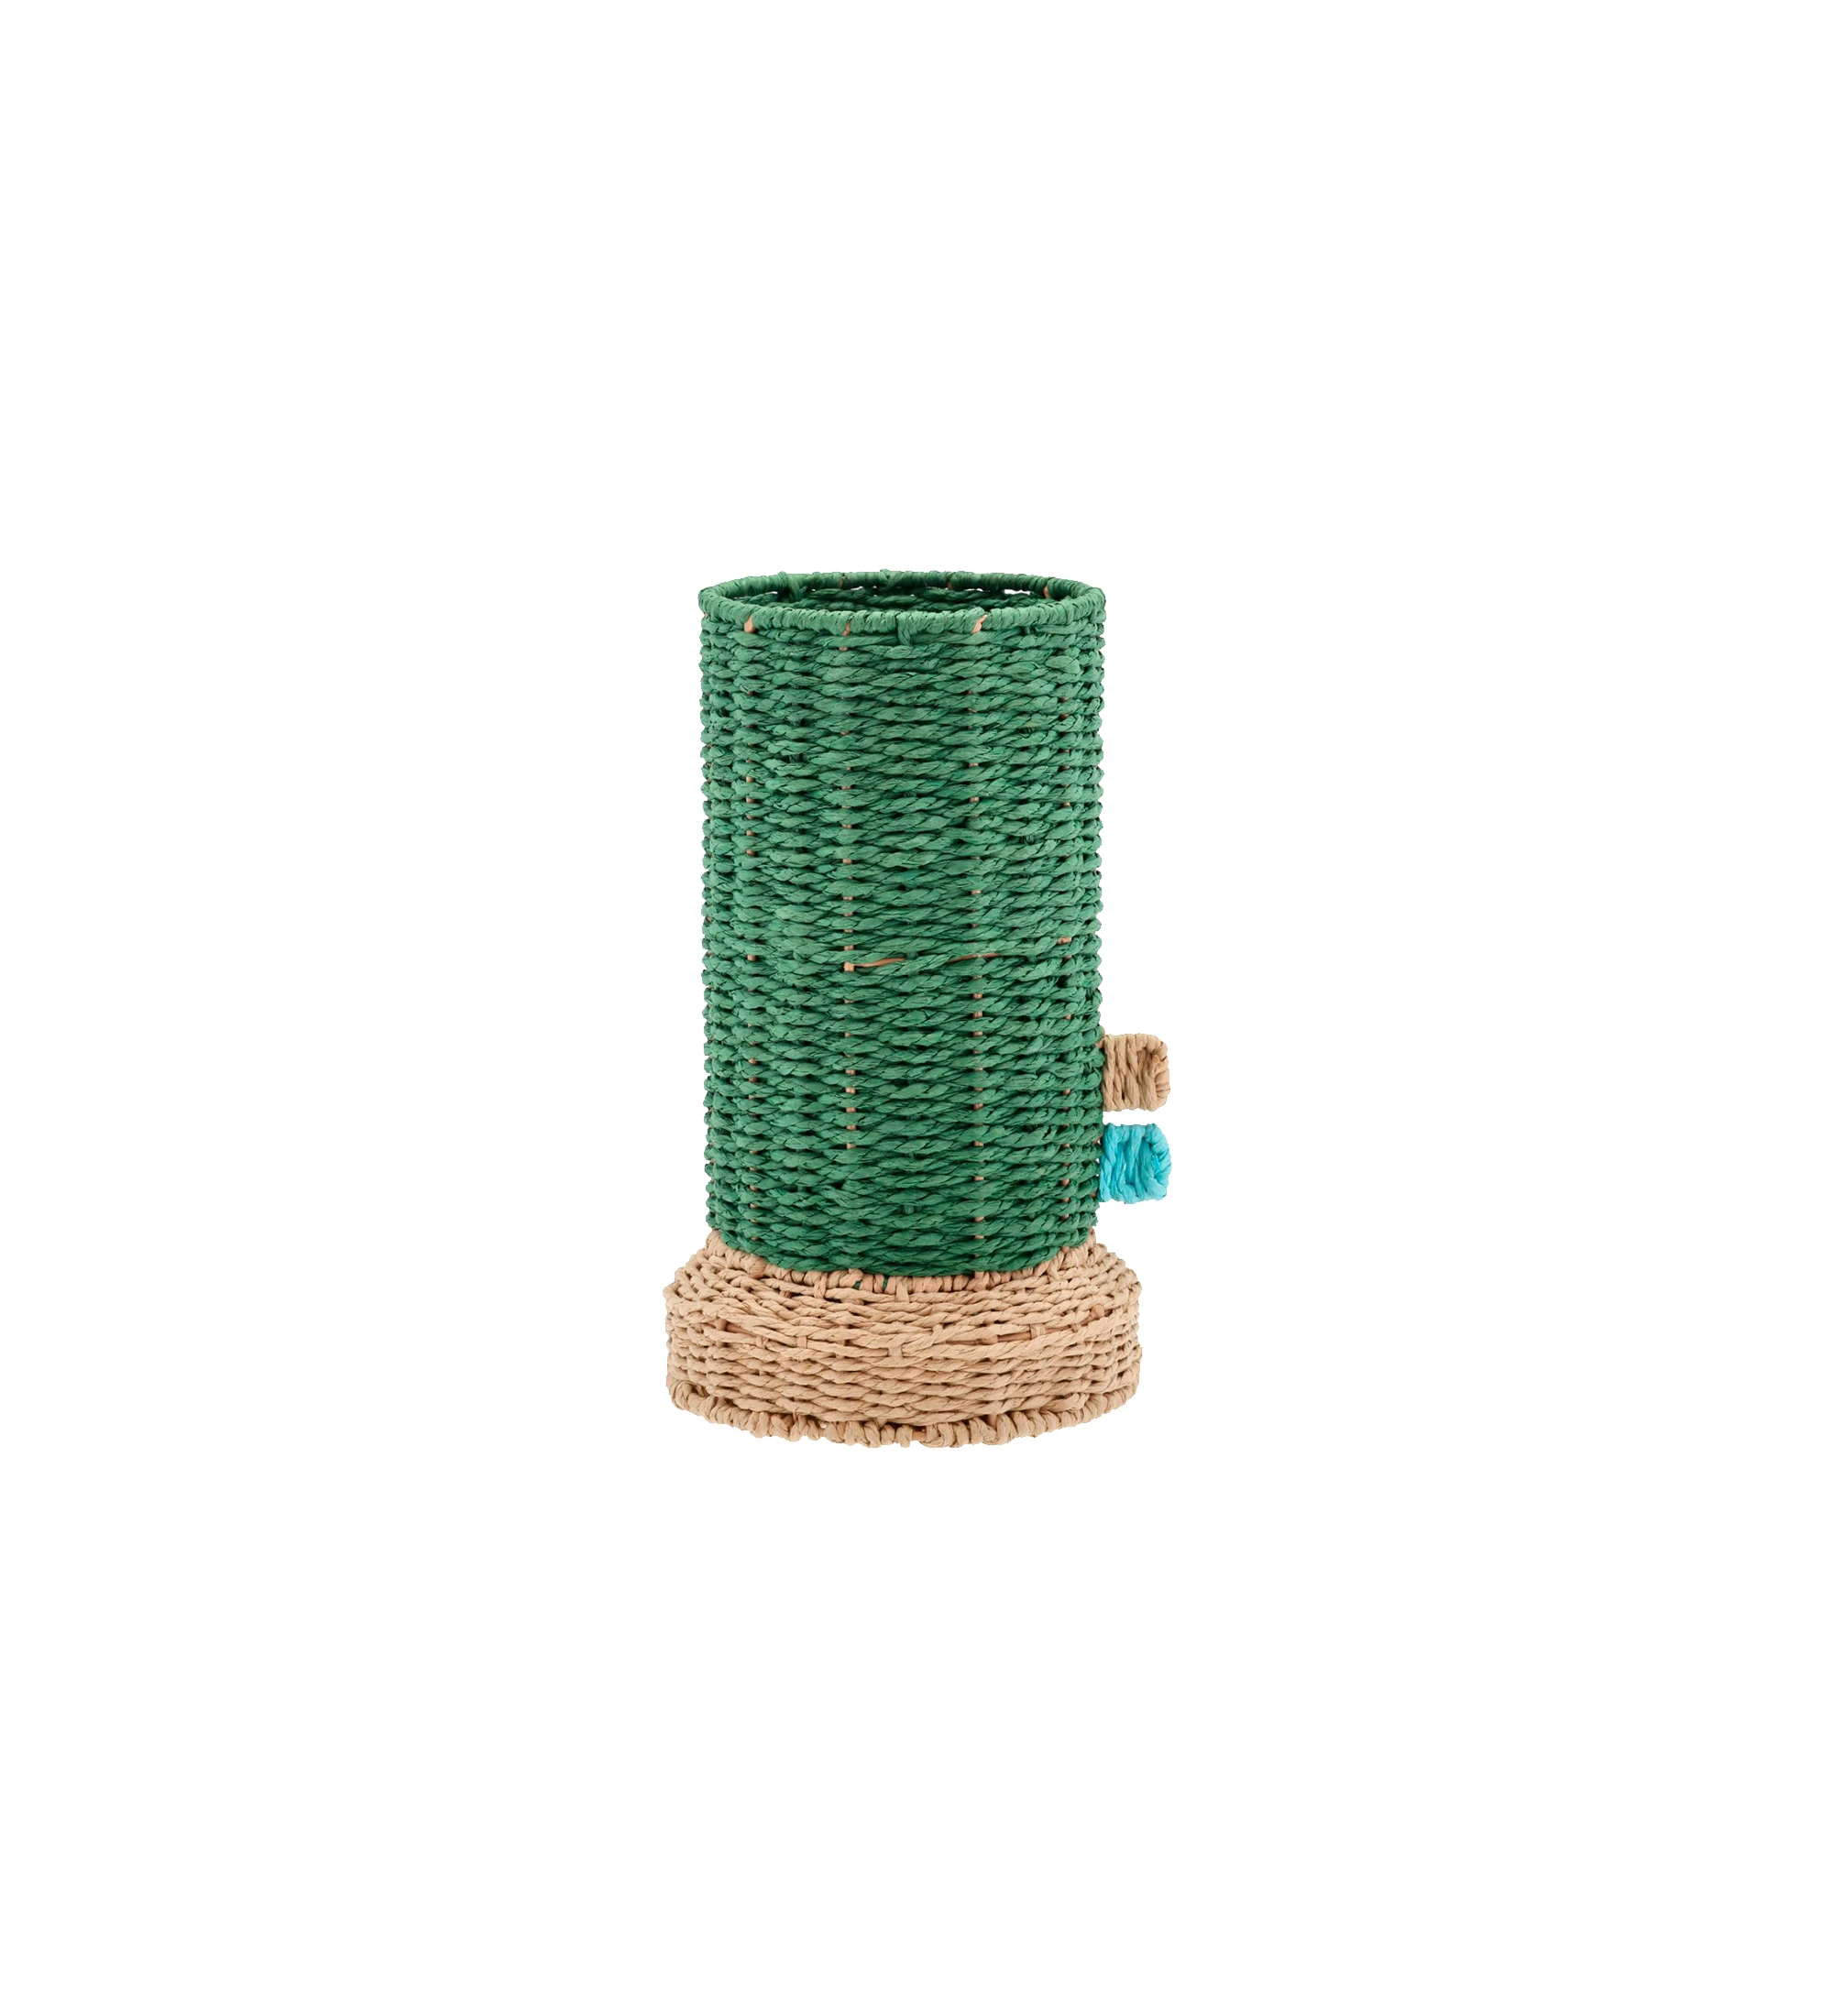 Jarrón de cuerda de papel verde con recipiente de cristal.